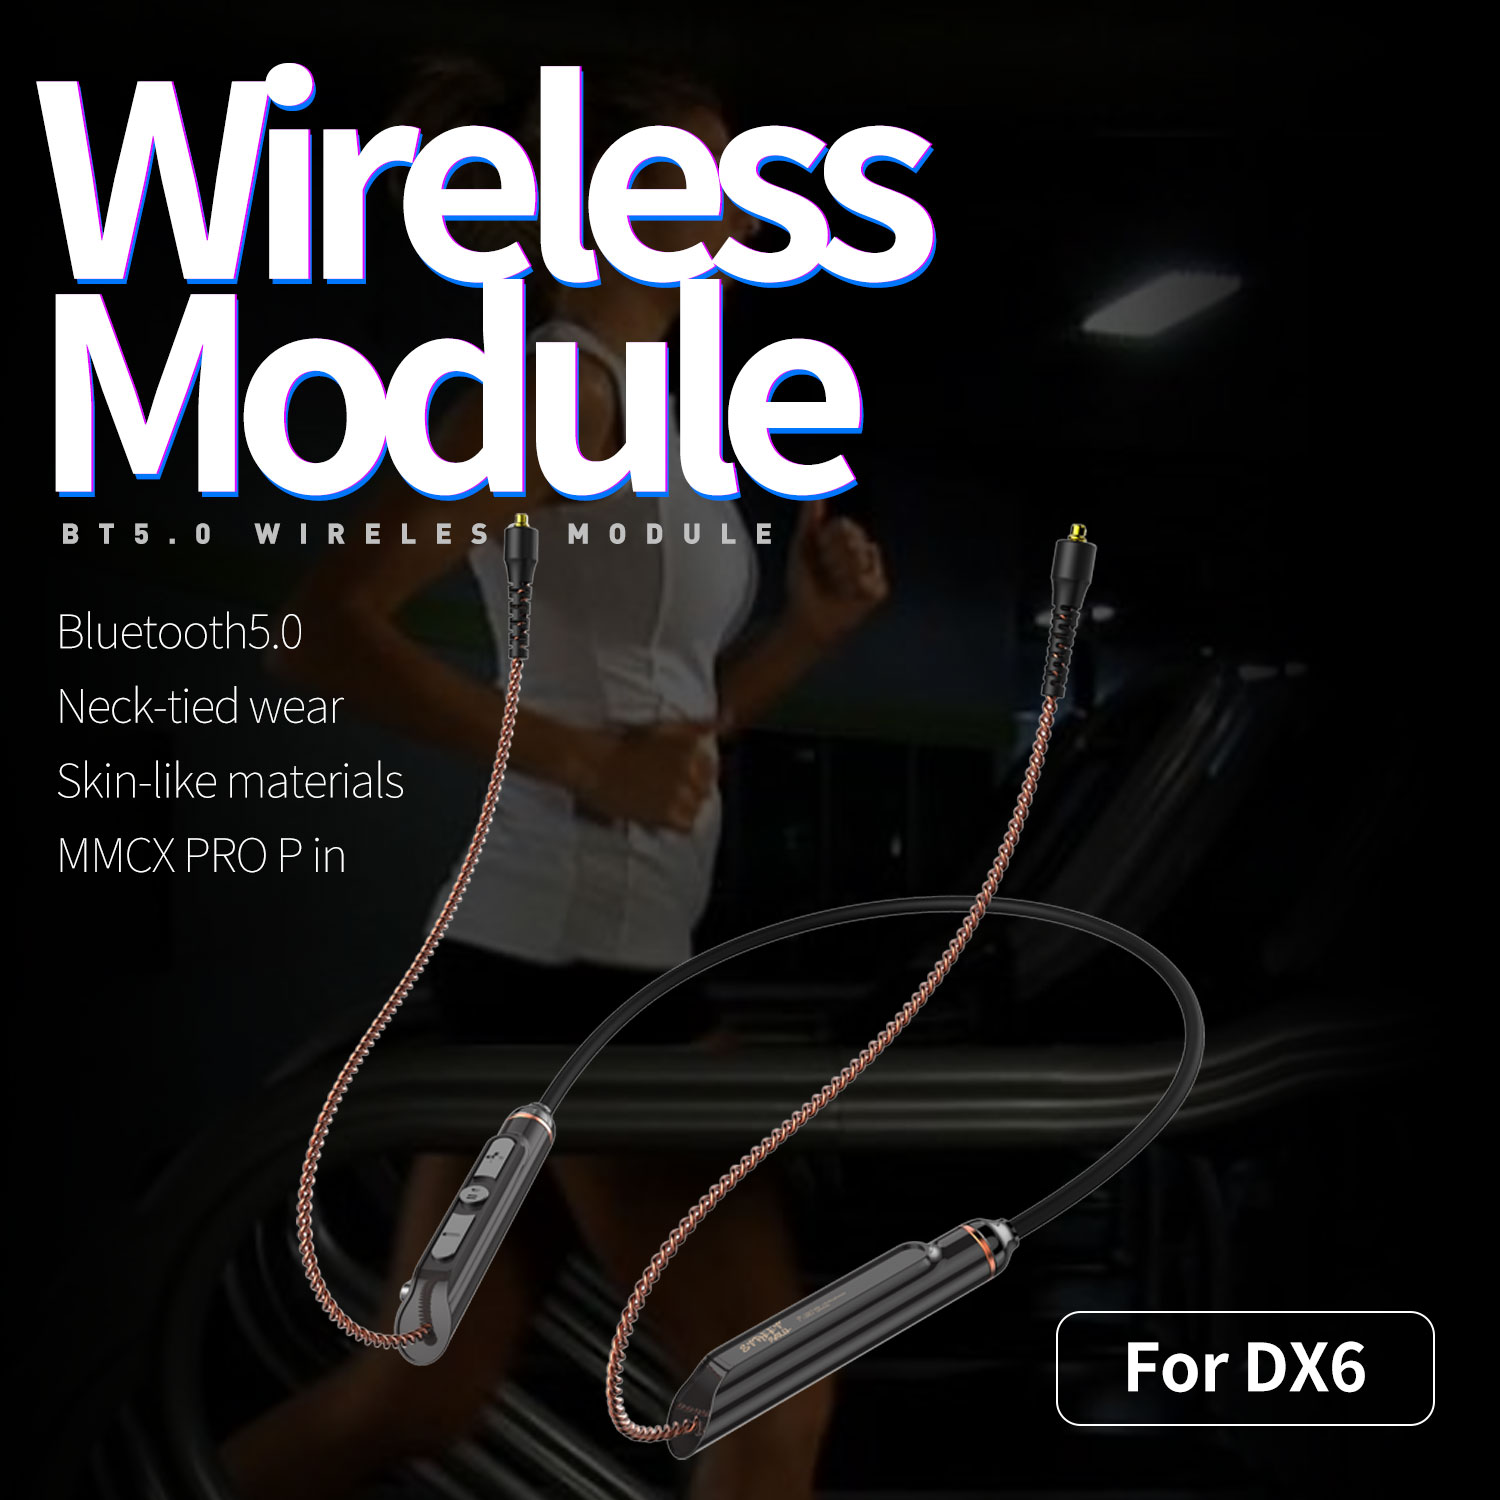 Module Bluetooth 5.0 Plextone DX6BT Wireless chuyển đổi tai nghe DX6 không dây thành có dây tương thích với tất cả các dòng tai nghe có Socket MMCX, pin 115mAh nghe nhạc liên tục 8h, thiết kế đeo cổ, có mic và phím Media chuyên dùng chạy bộ. - Hàng Chính